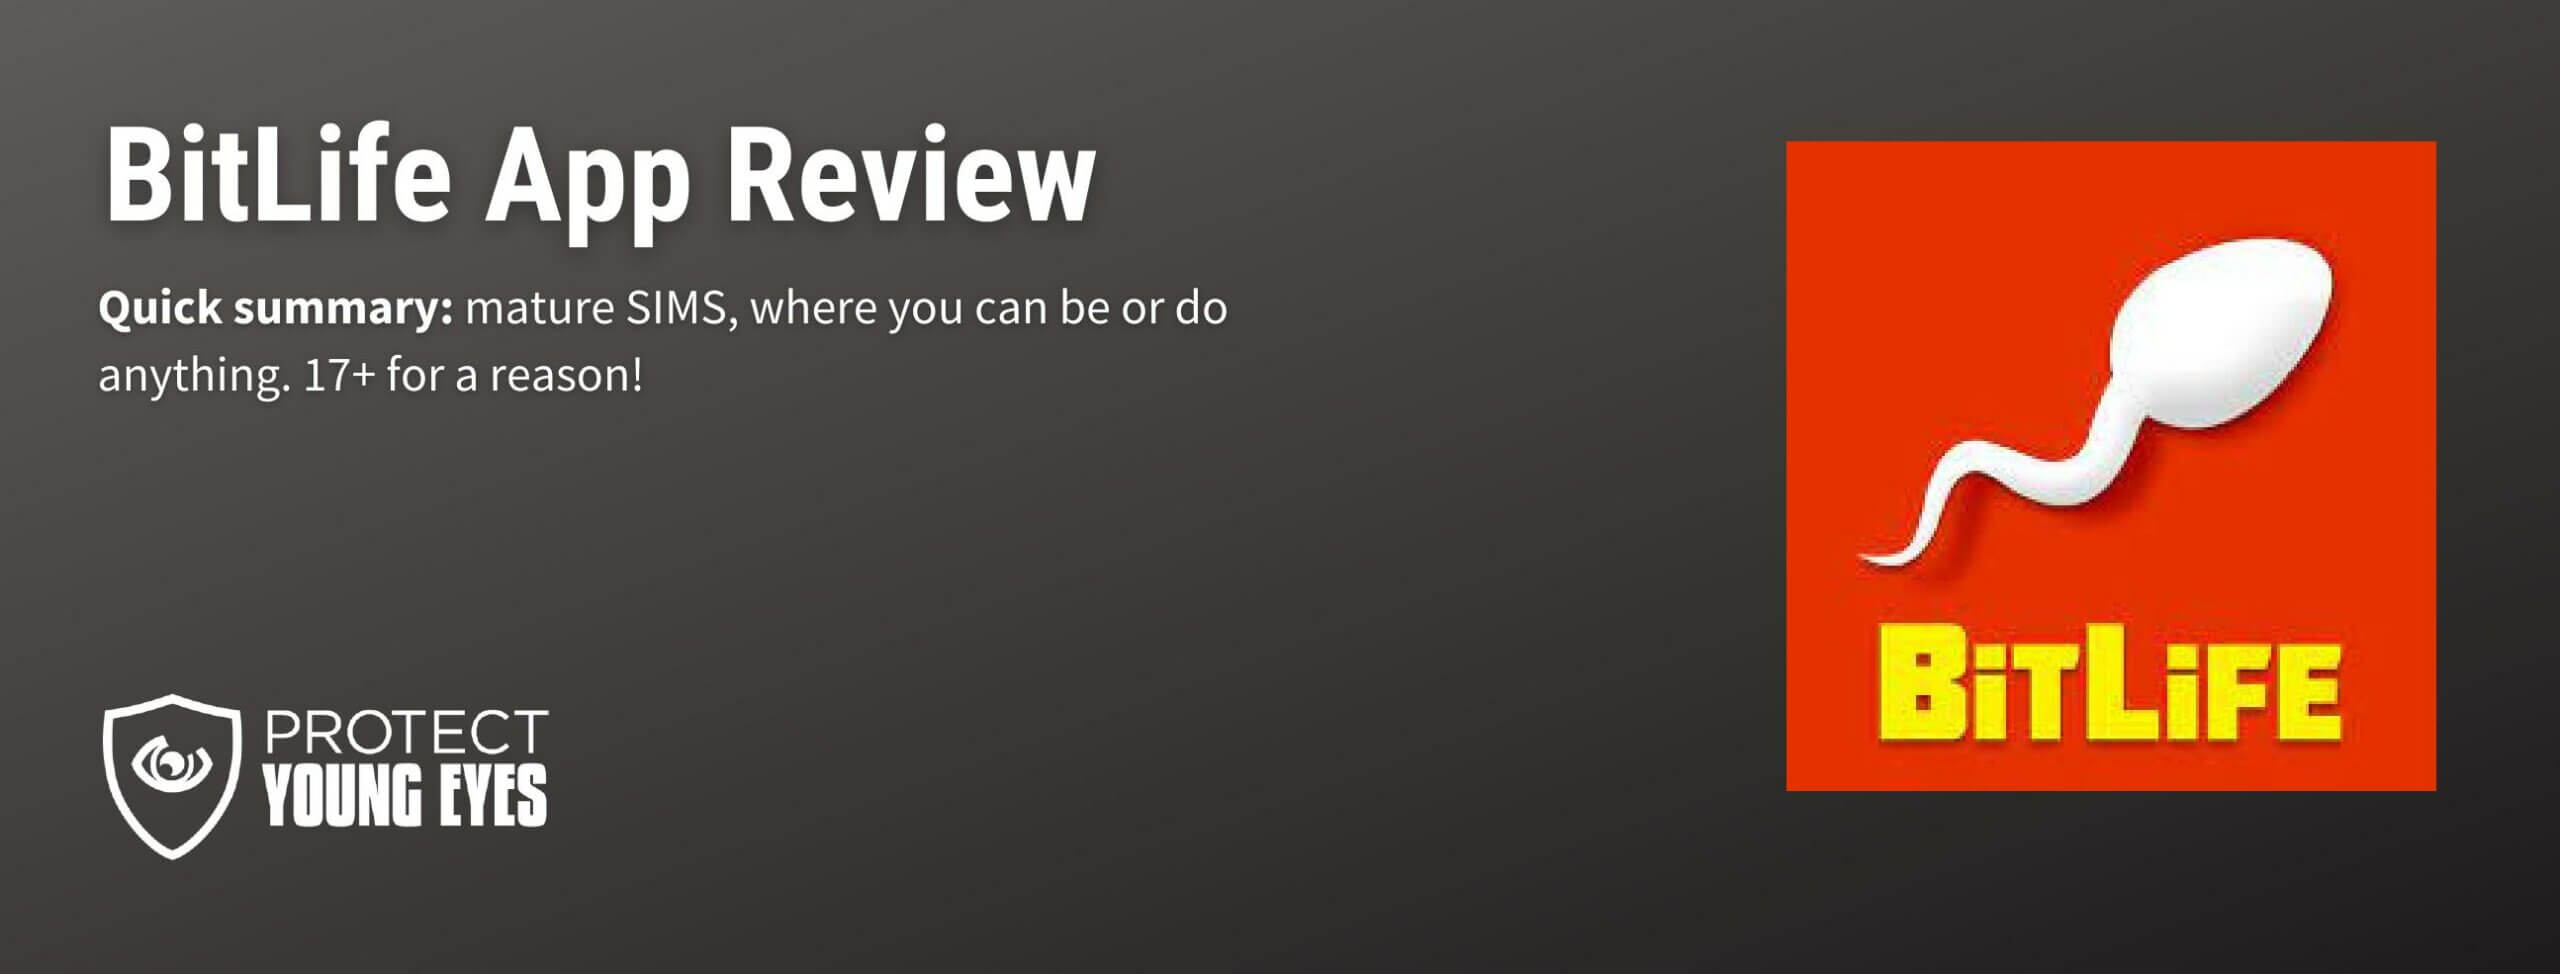 BitLife App Review Header